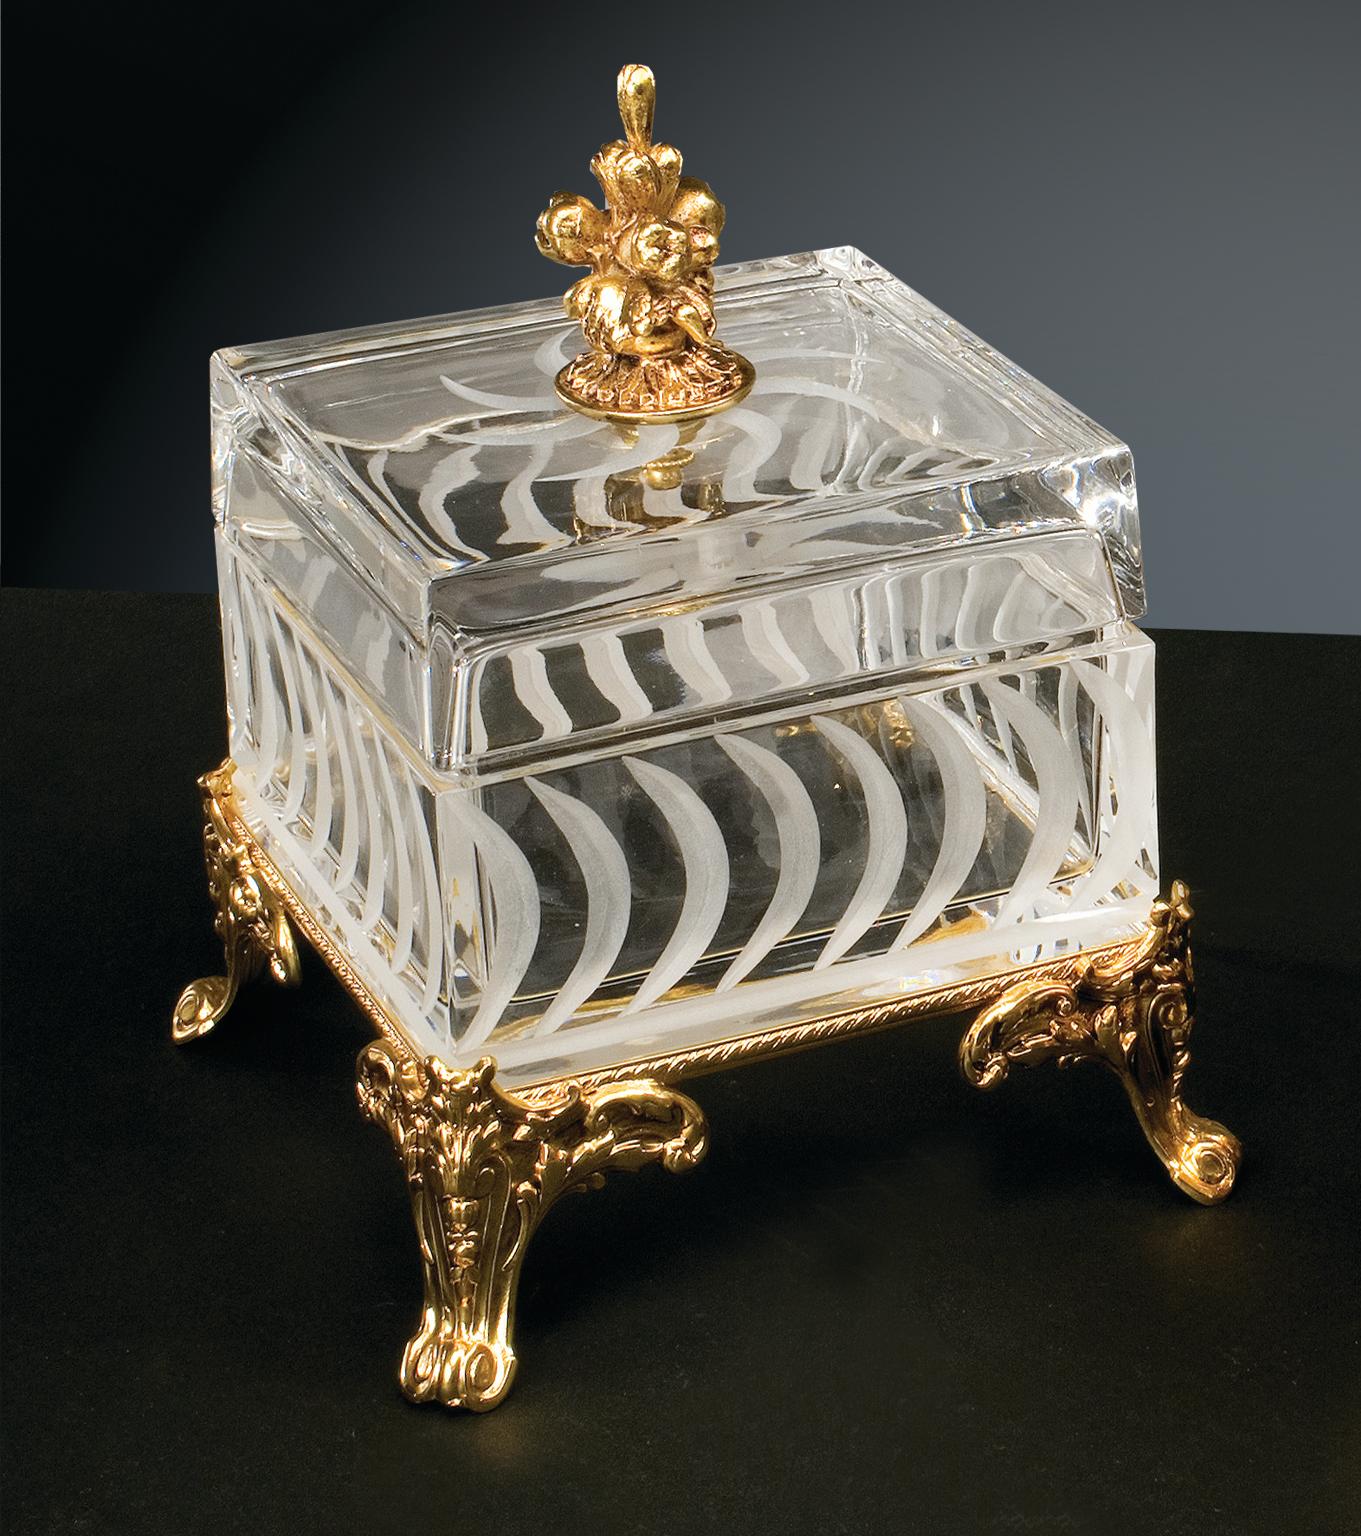 Boîte en cristal clair avec des gravures en taille opaque agrémentées de détails en laiton réalisés selon la technique artisanale de la cire perdue avec une finition en or patiné. Chaque objet est fabriqué à la main et le soin apporté à chaque